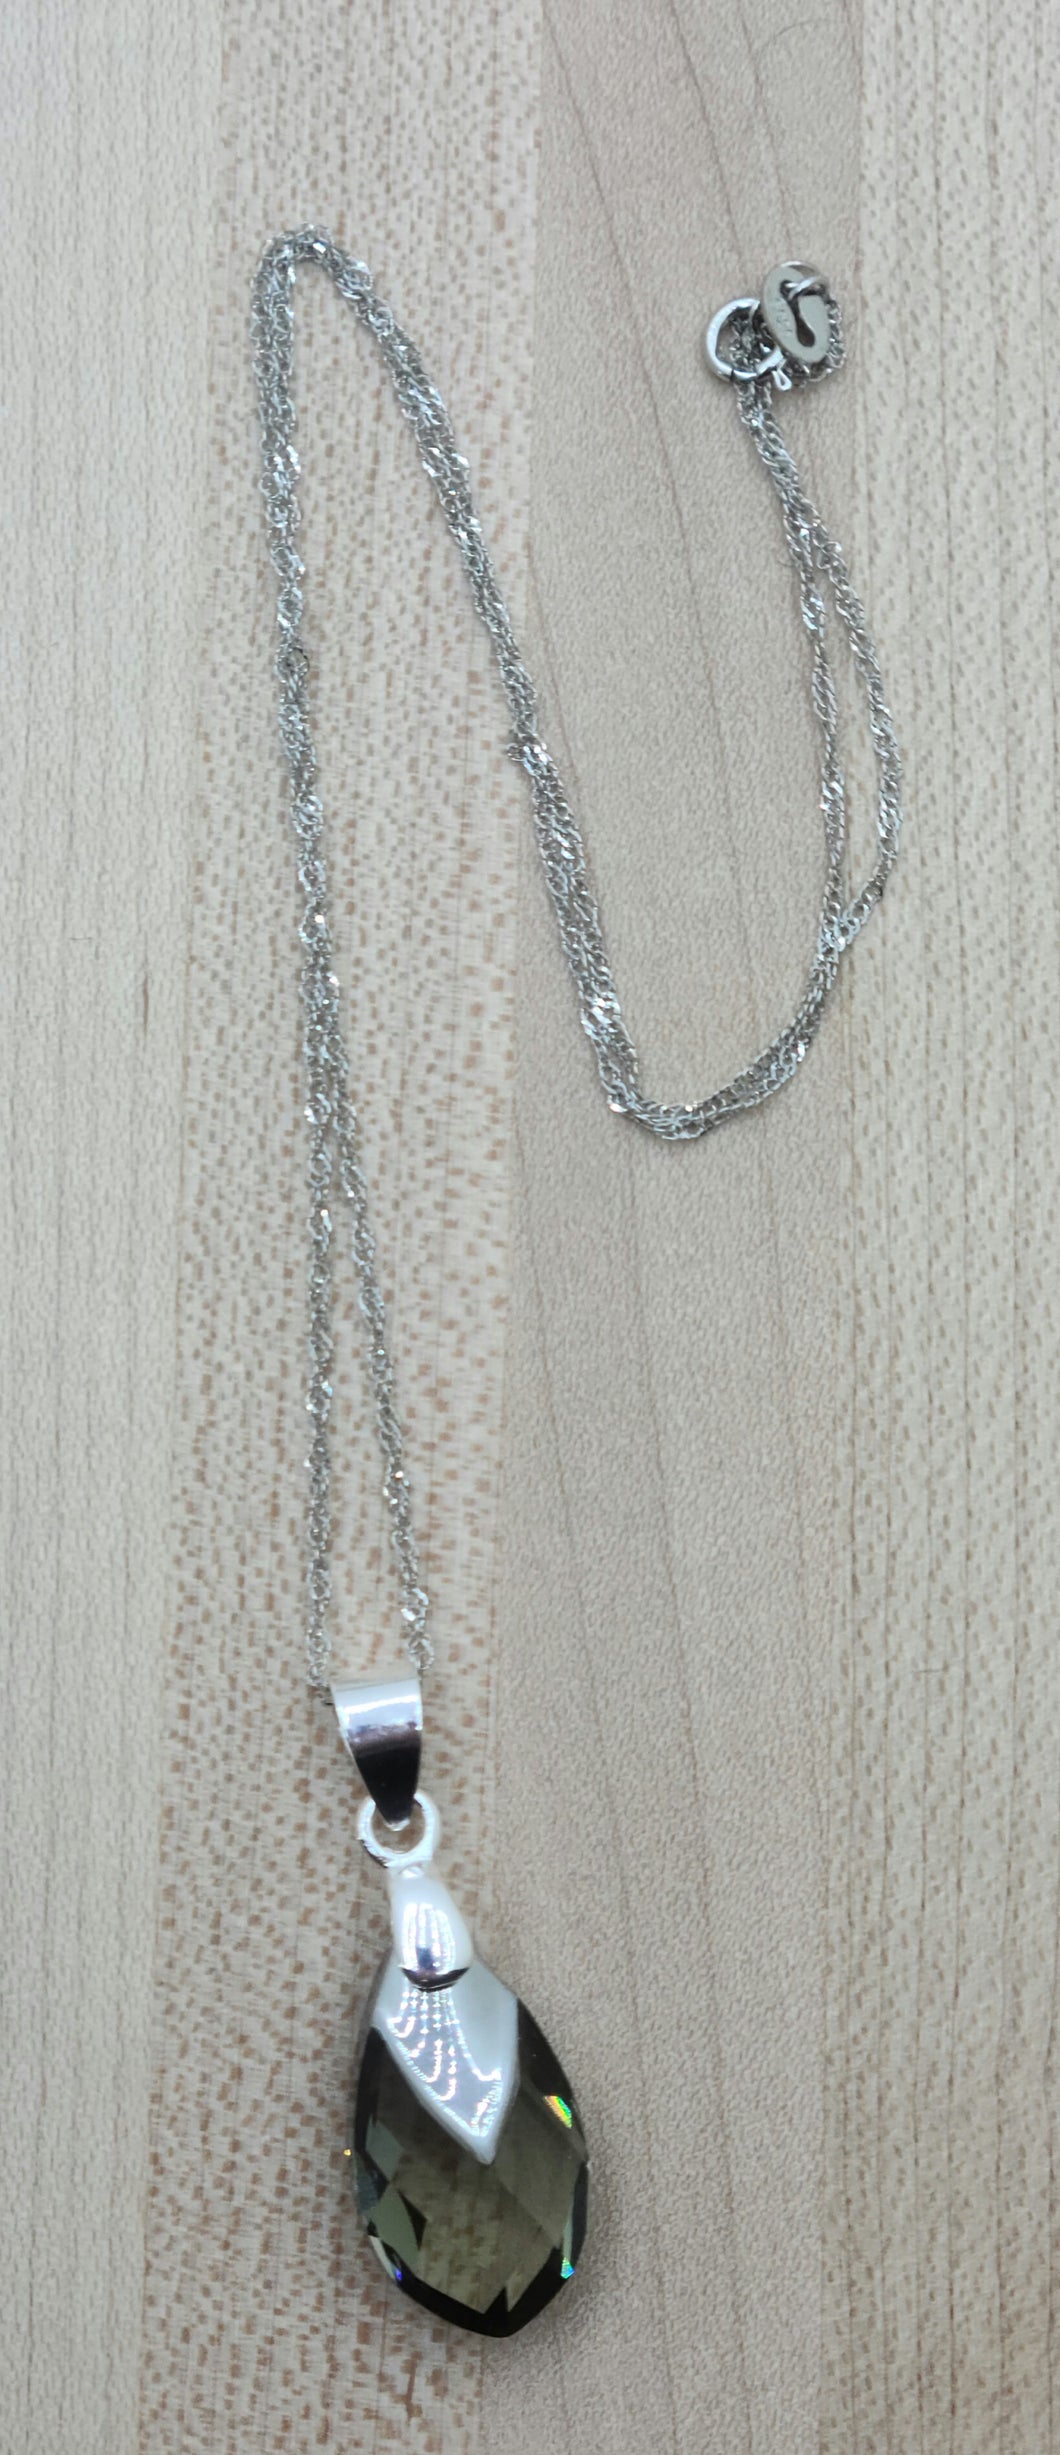 Translucent Silver Teardrop Pendant Necklace